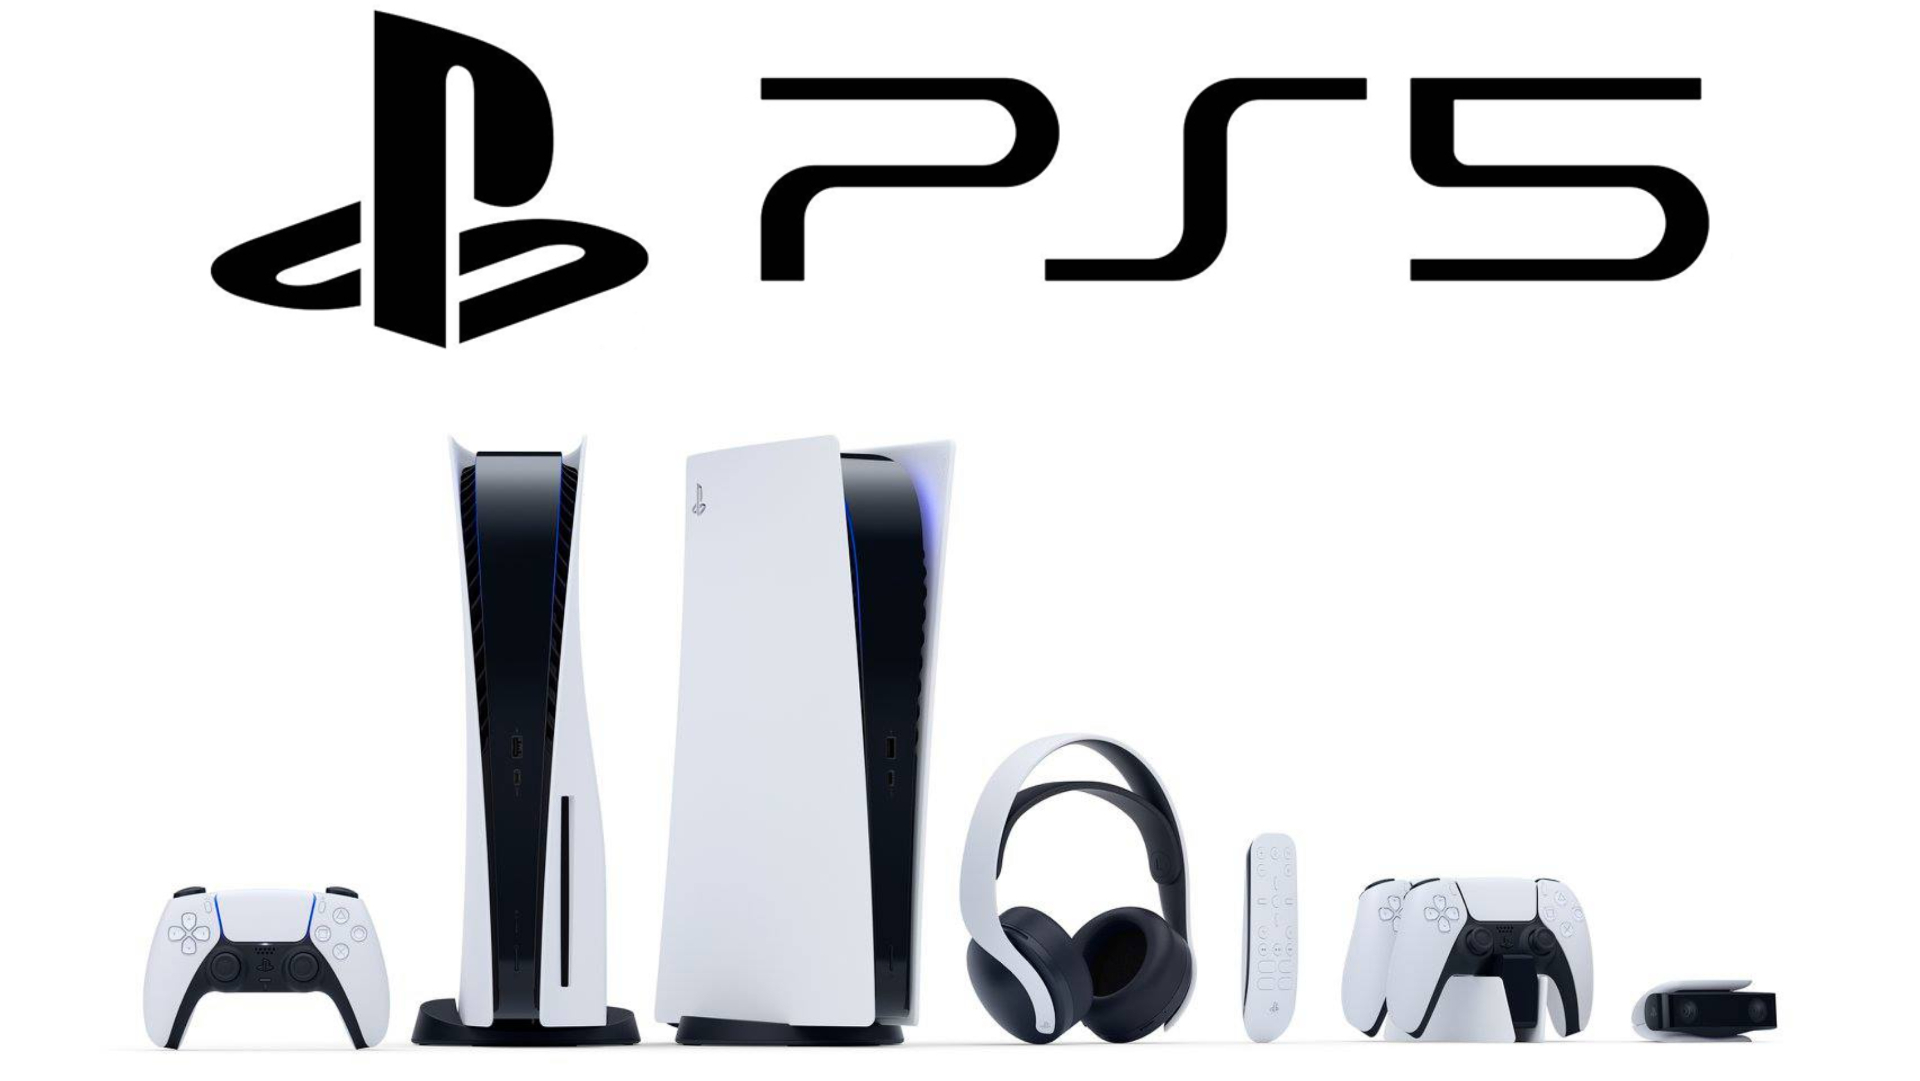 کنسول بازی سونی مدل Playstation 5 ظرفیت 825 گیگابایت تک دسته در فراسنتر 